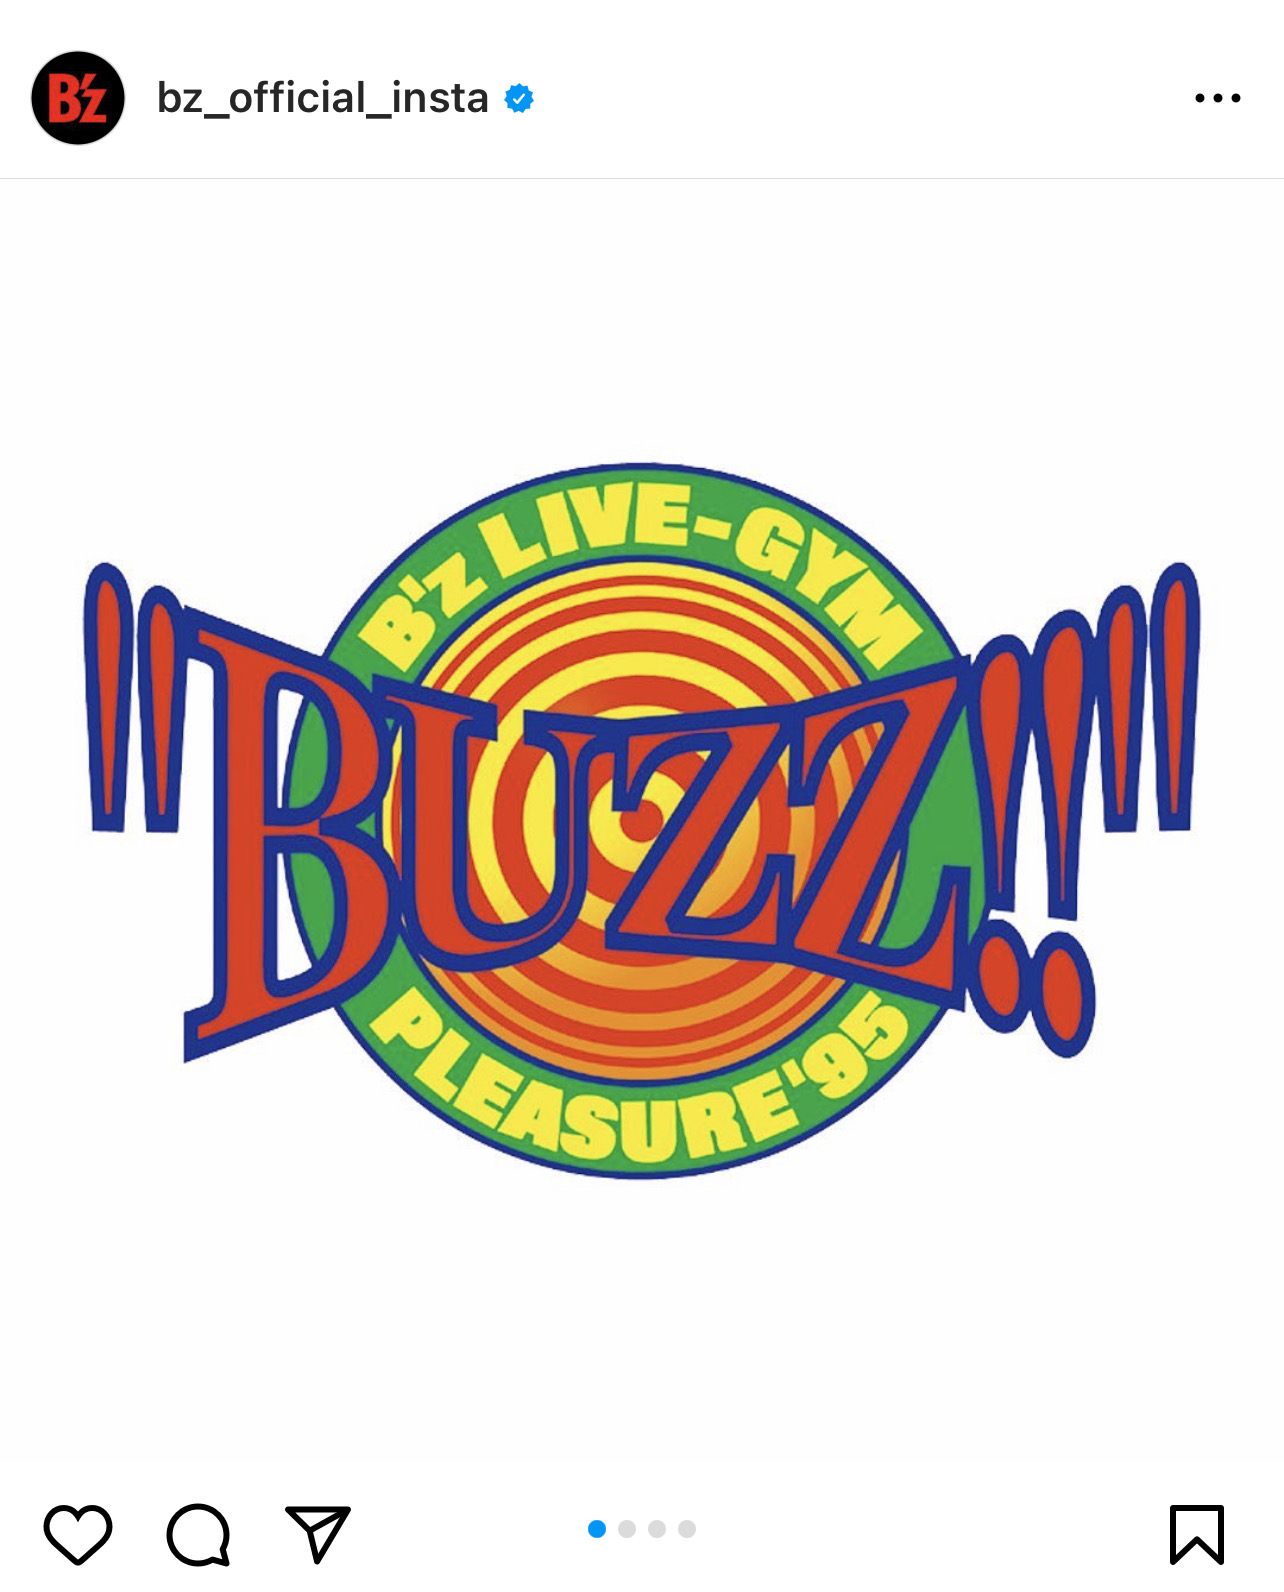 B'z、「Pleasure '95 “BUZZ!!”」のライブレポート画像を公開 | 超 